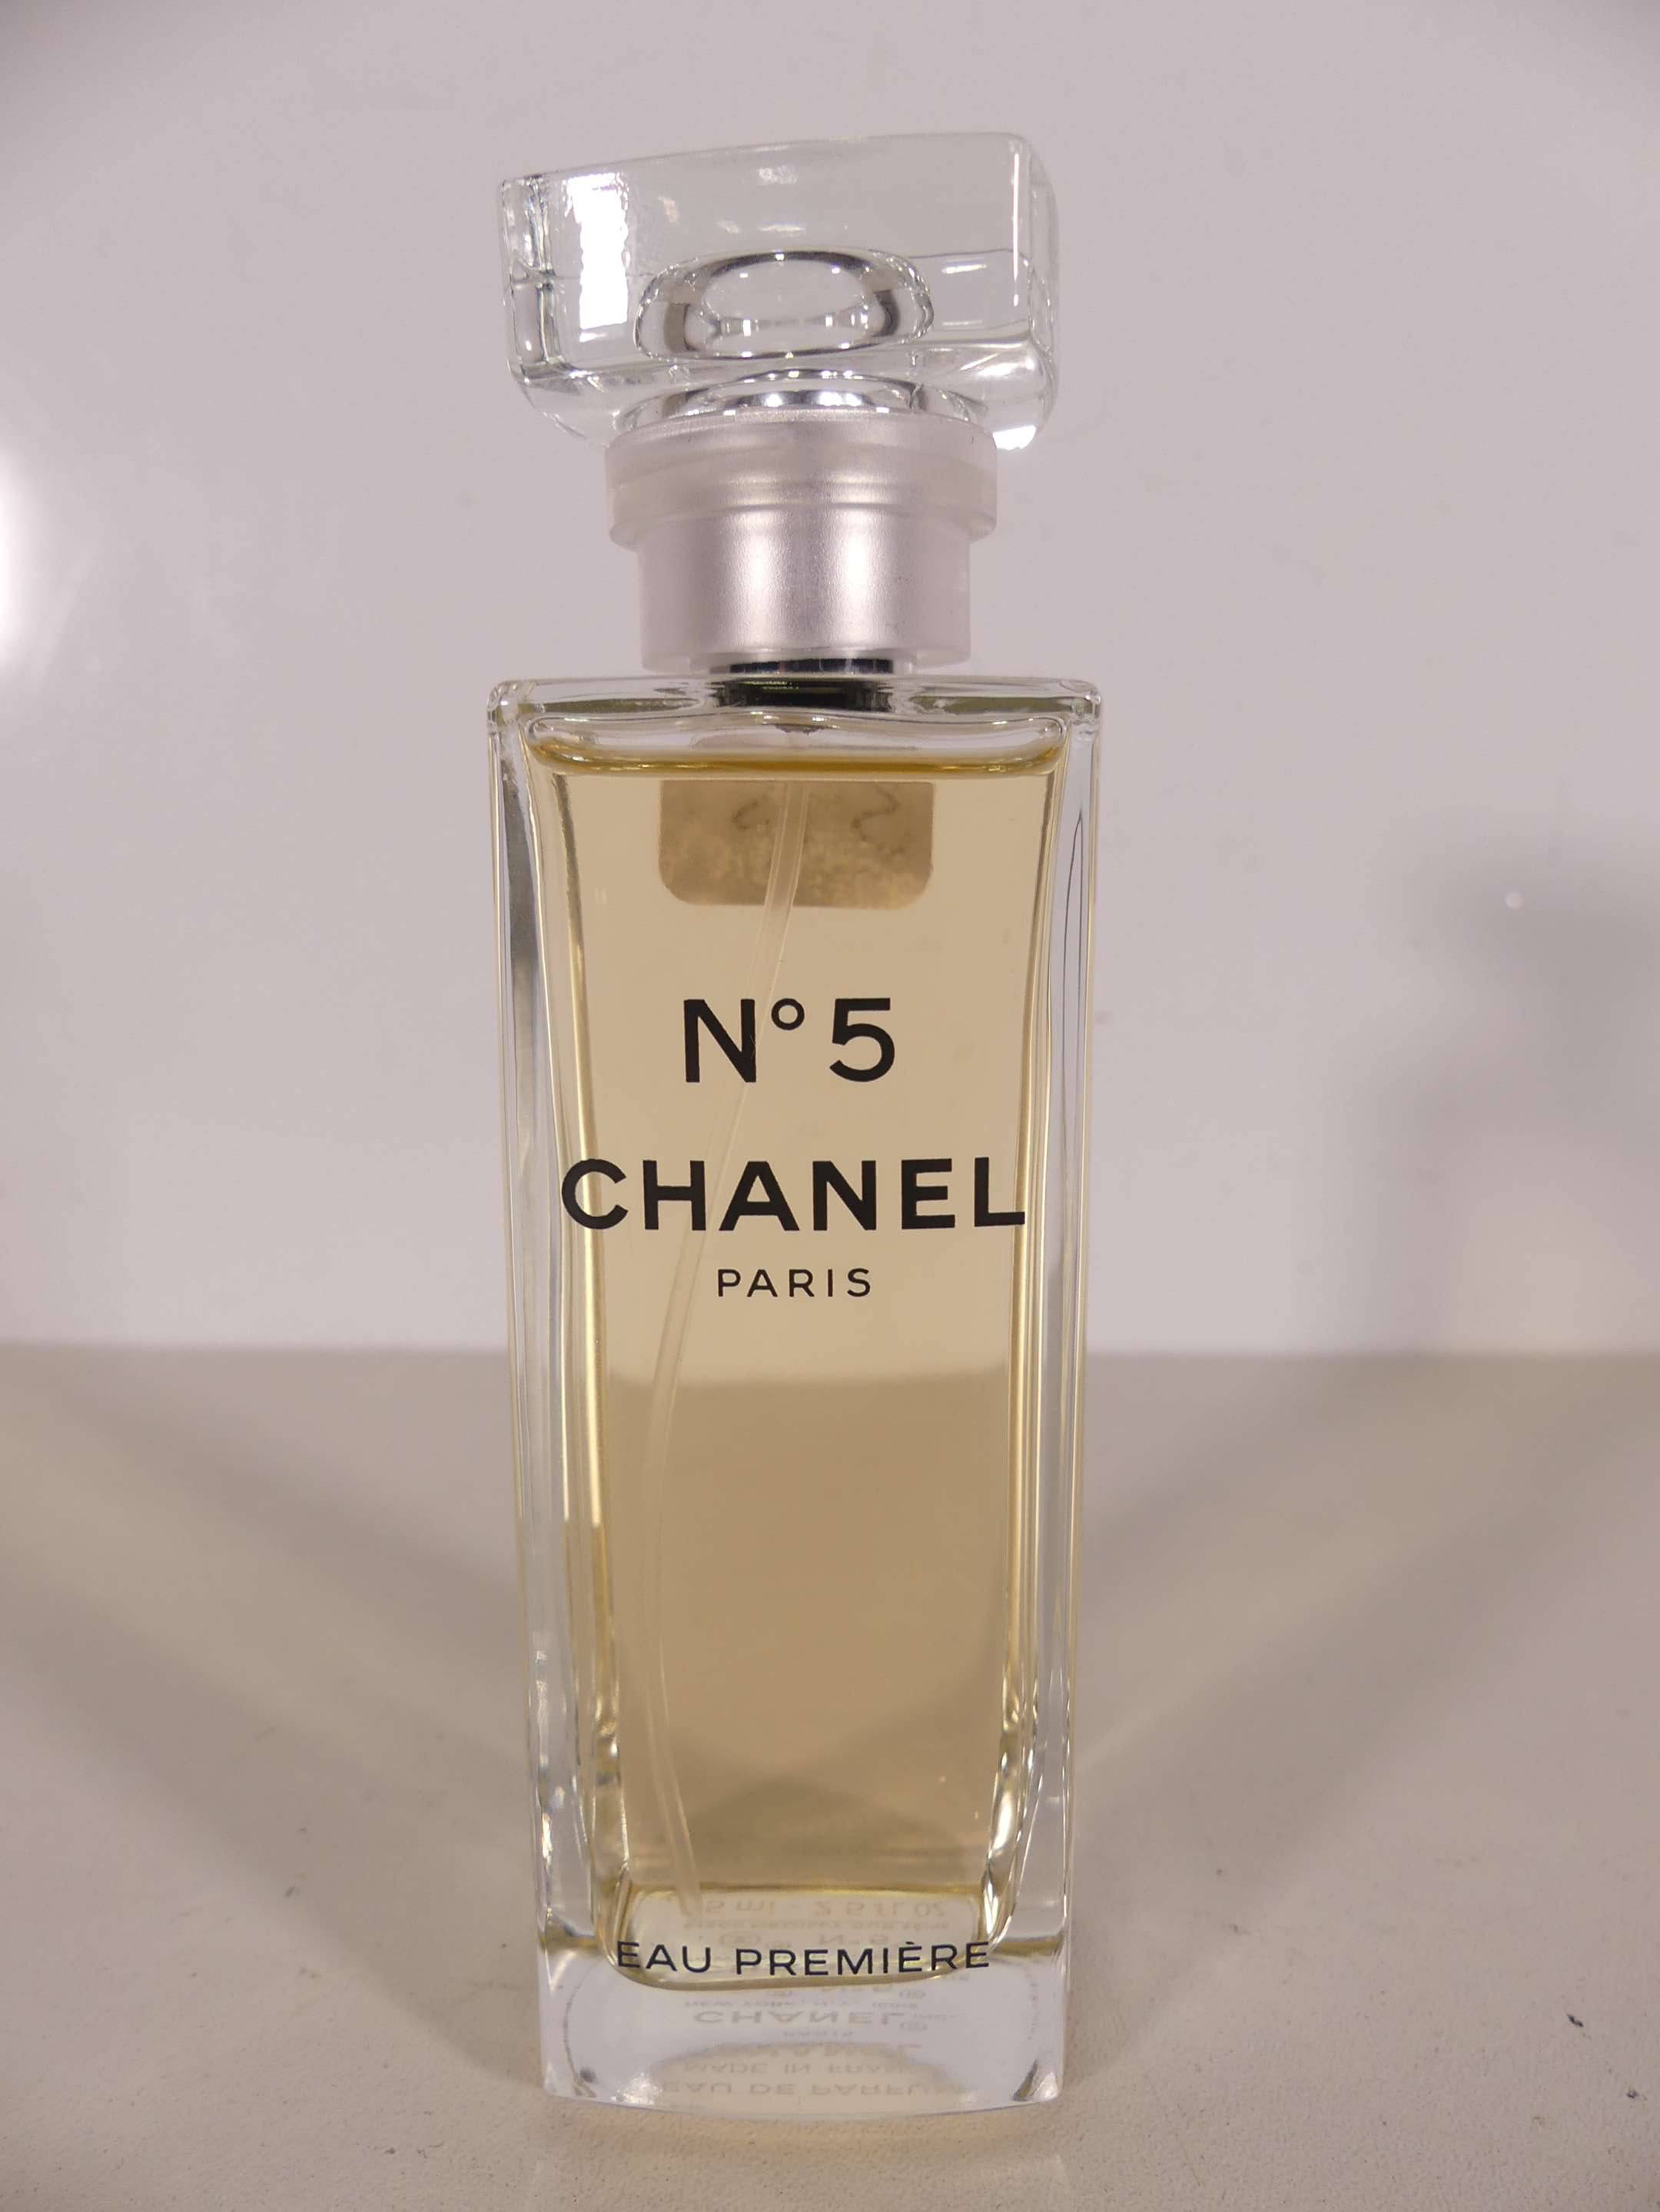 Chanel, Chanel No 5 Eau Premiere, Eau De Parfum, For Women, 75 ml